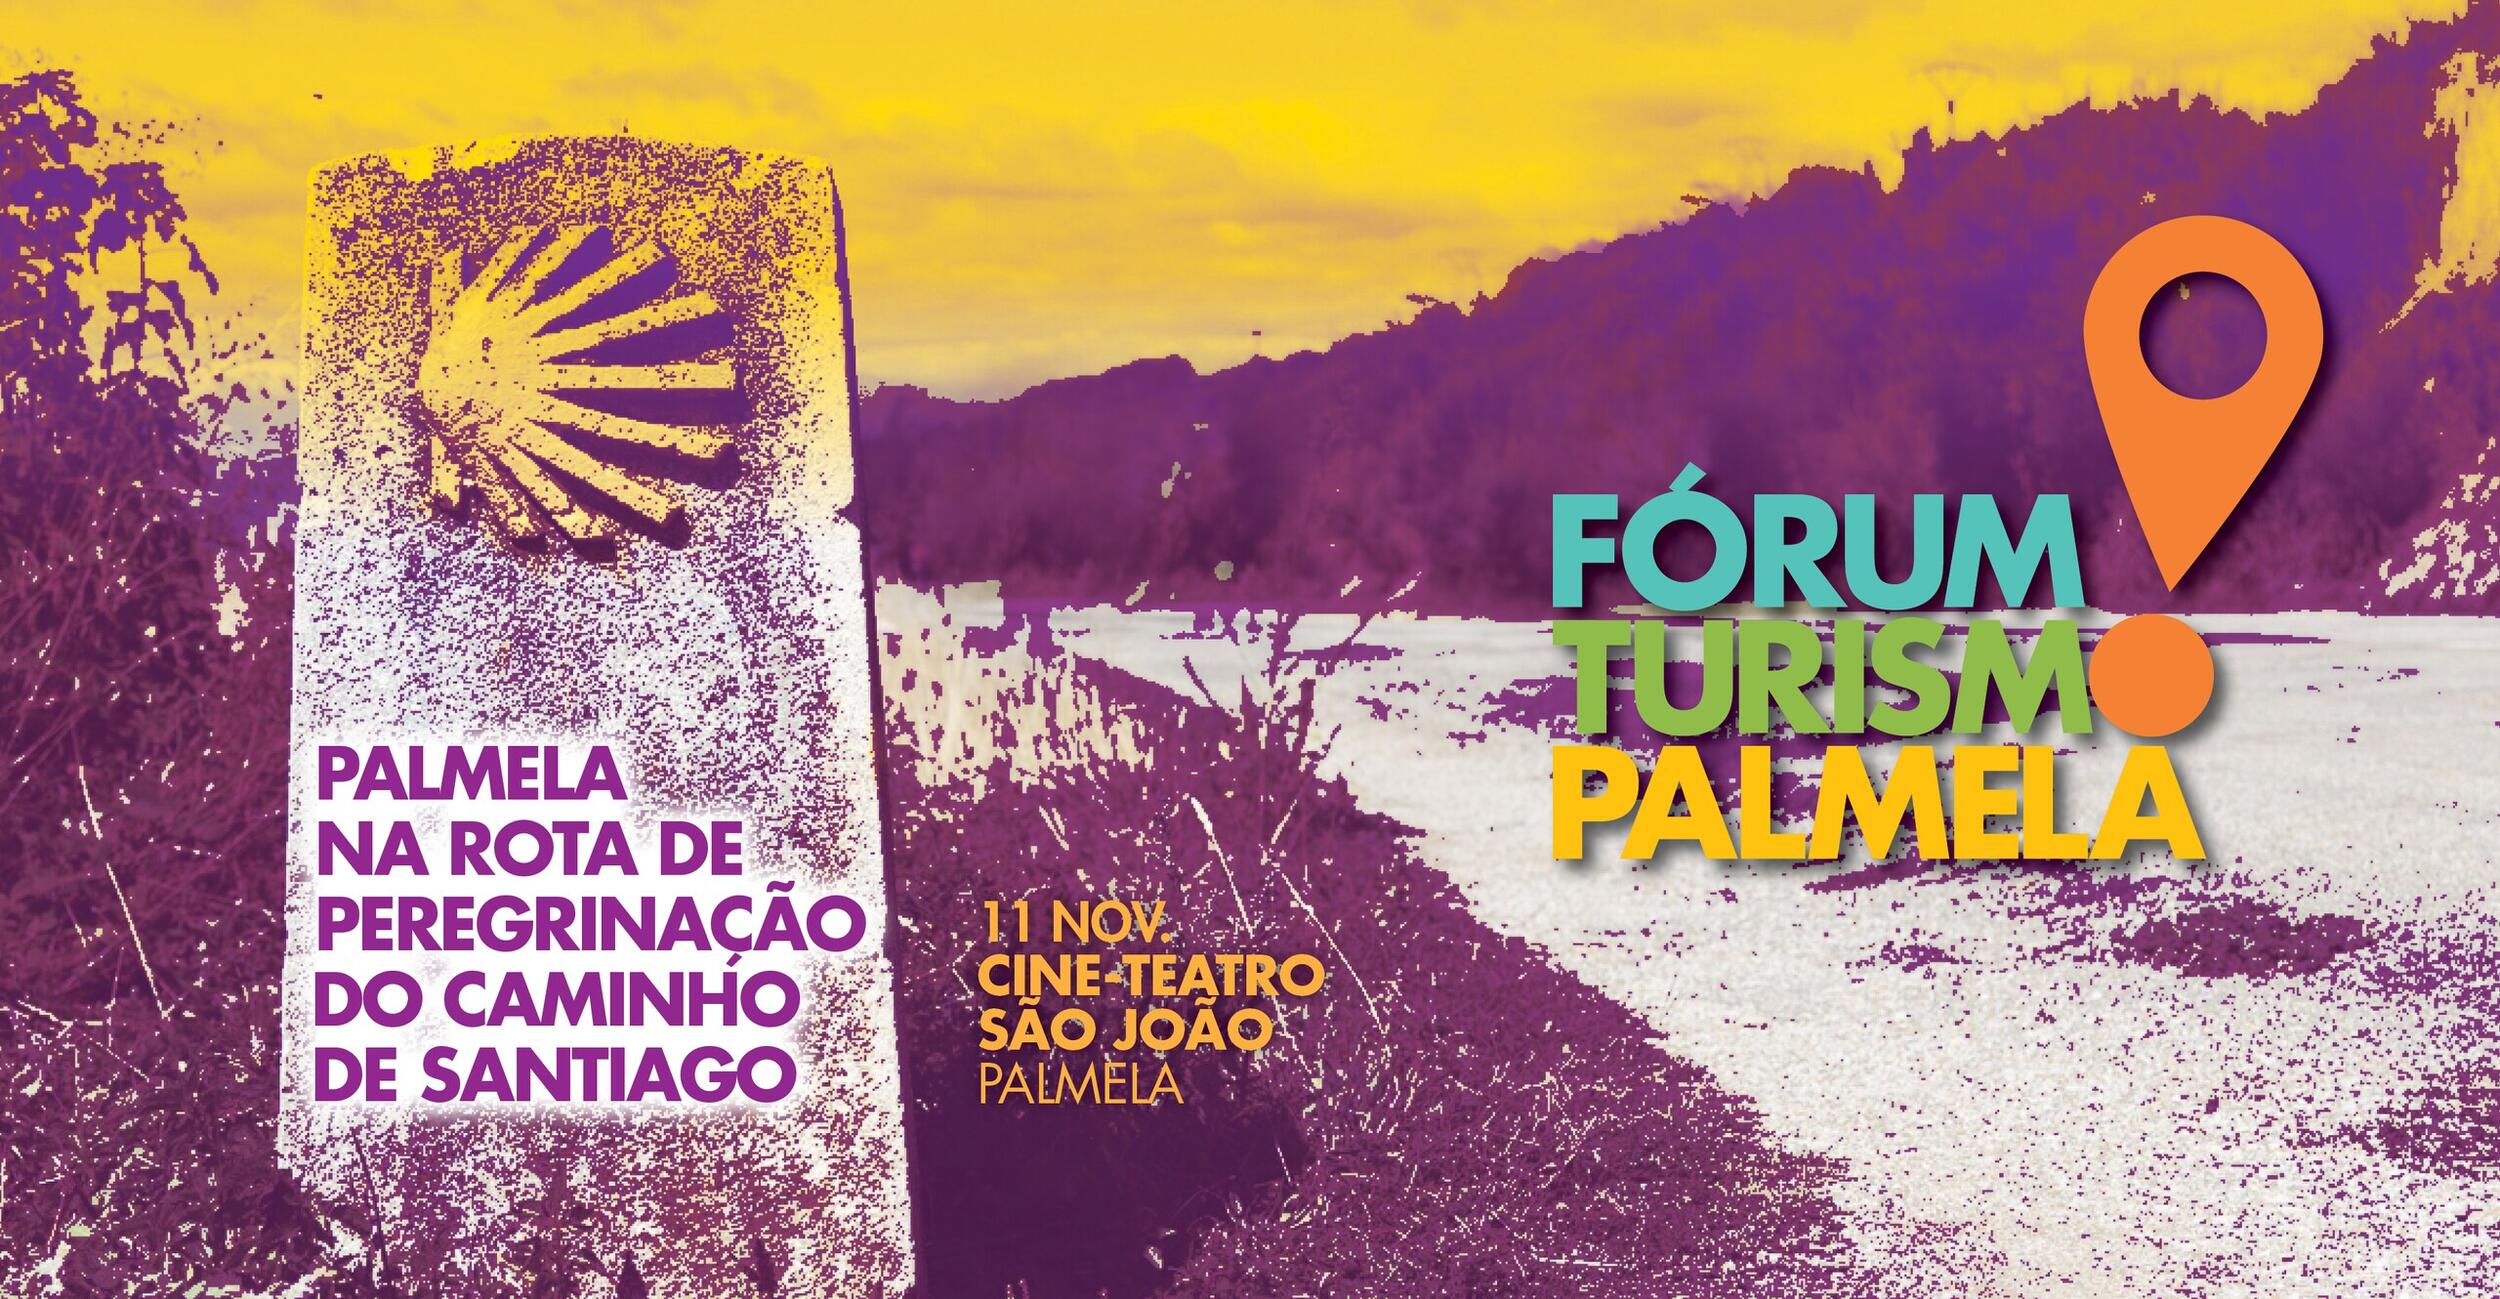 Inscrições a decorrer! Município promove Fórum Turismo Palmela a 11 de novembro  